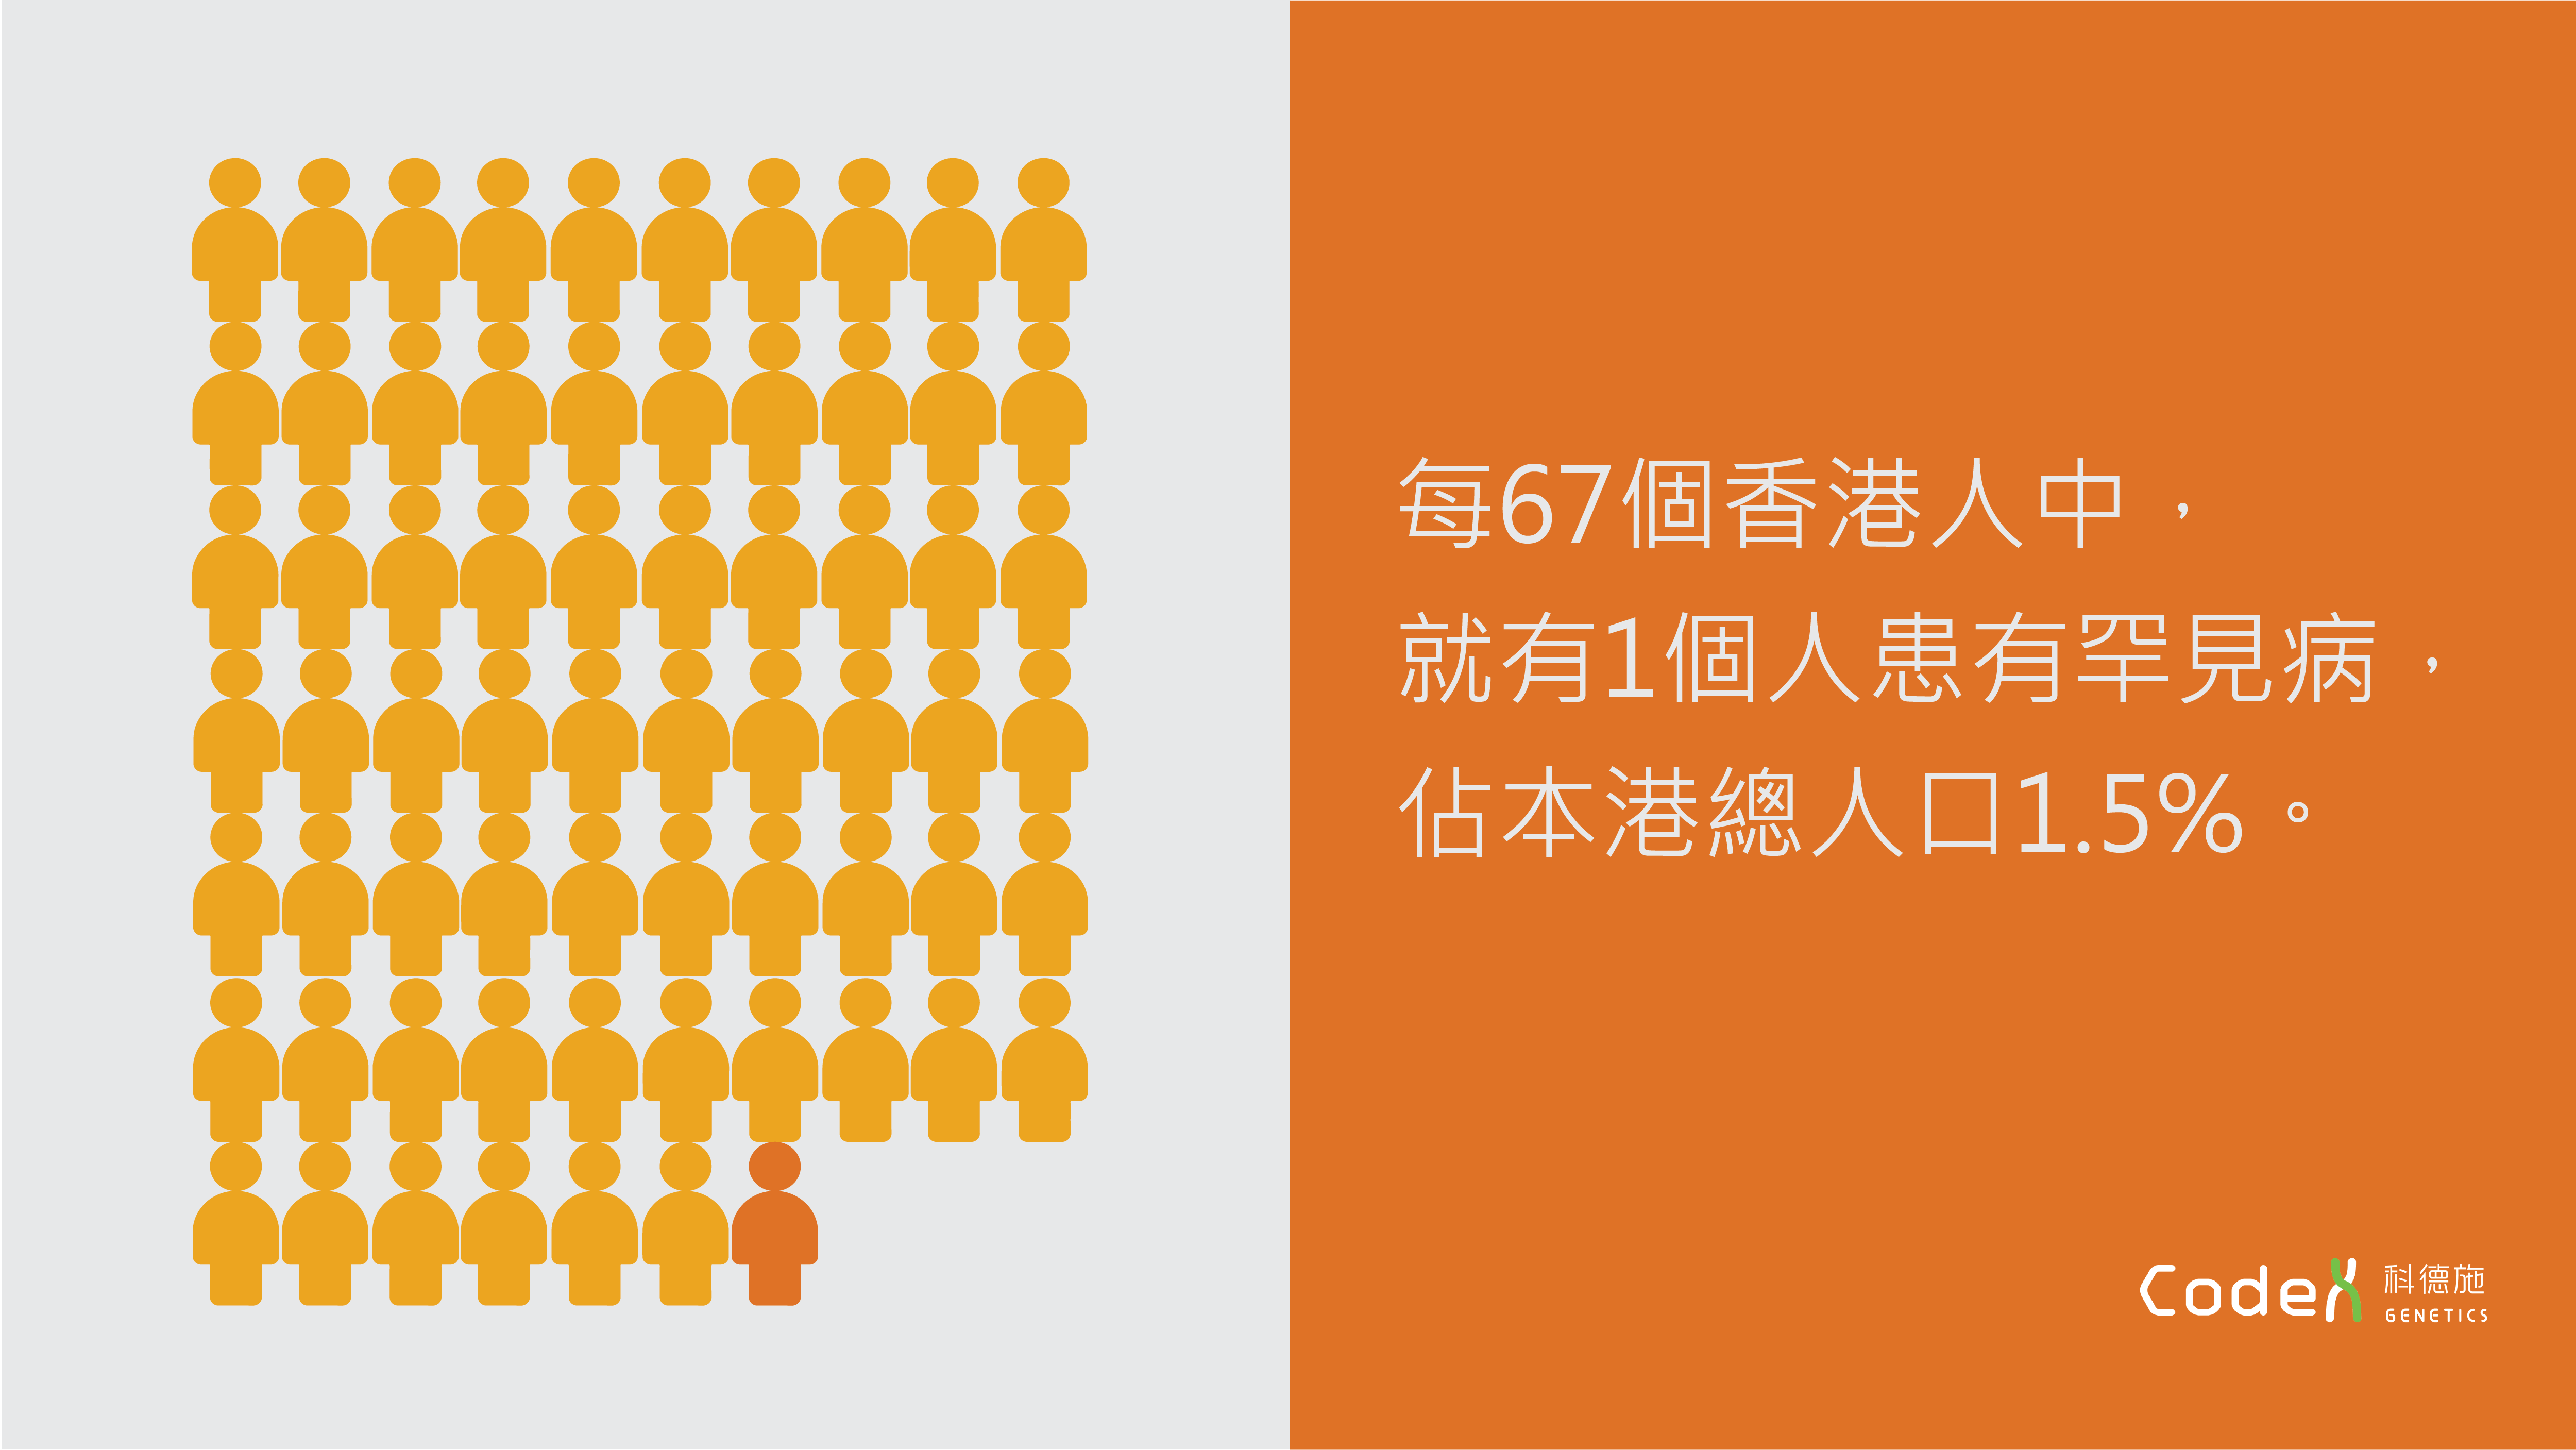 香港罕見病統計數字